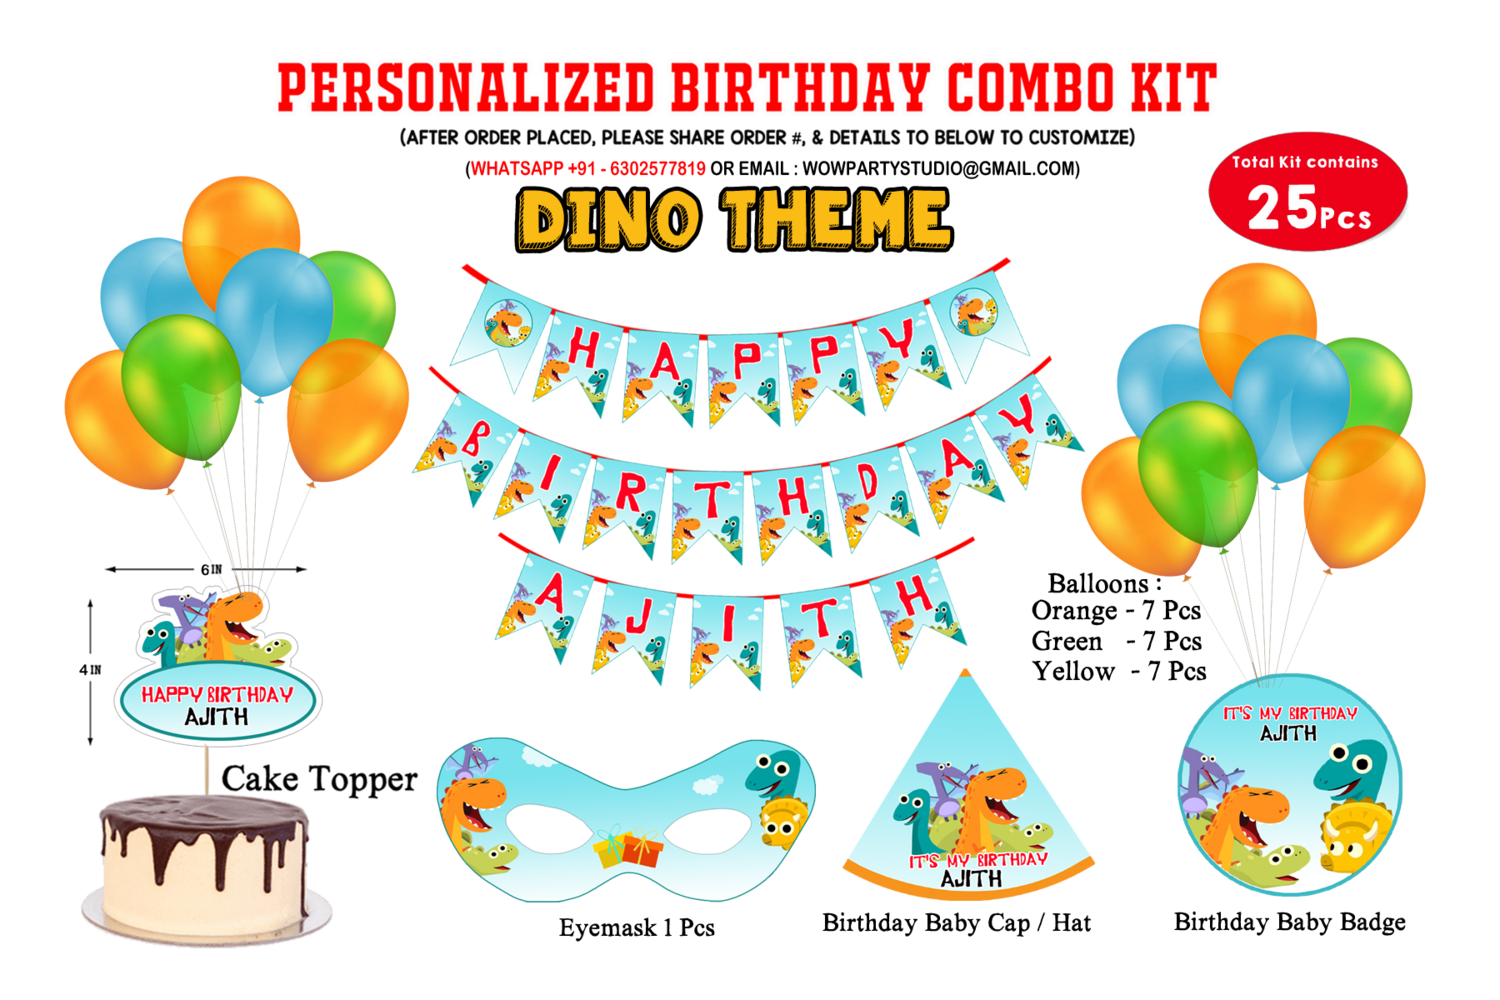 Dino Theme - Combo Kit 25Pcs